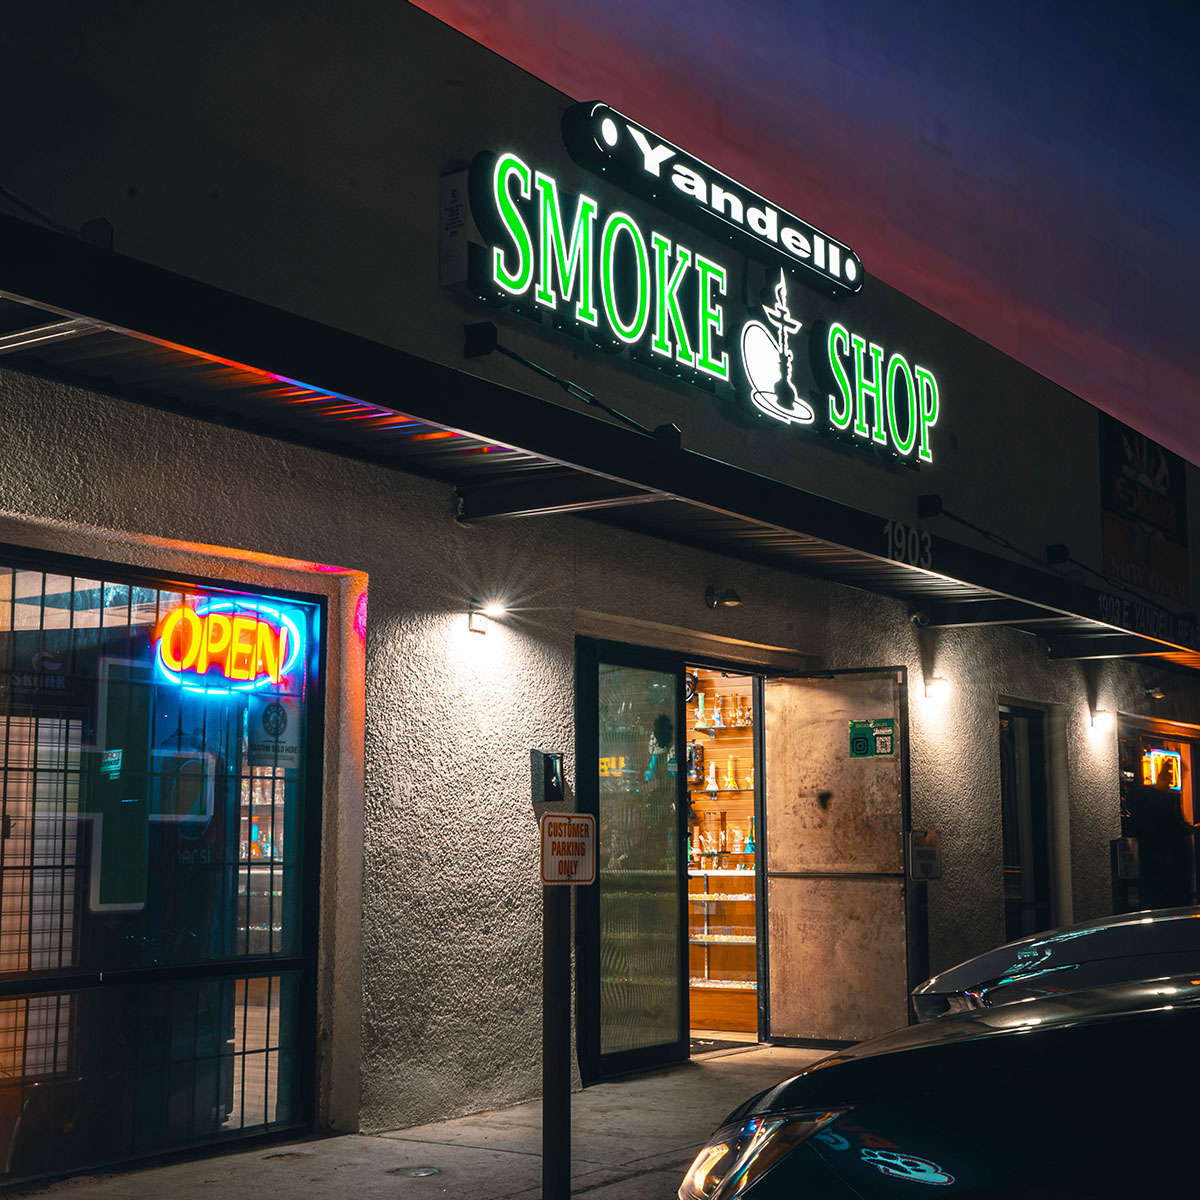 Yandell Smoke Shop - 1903 Yandell Dr Ste 2 (Rear, El Paso, TX 79903 near me